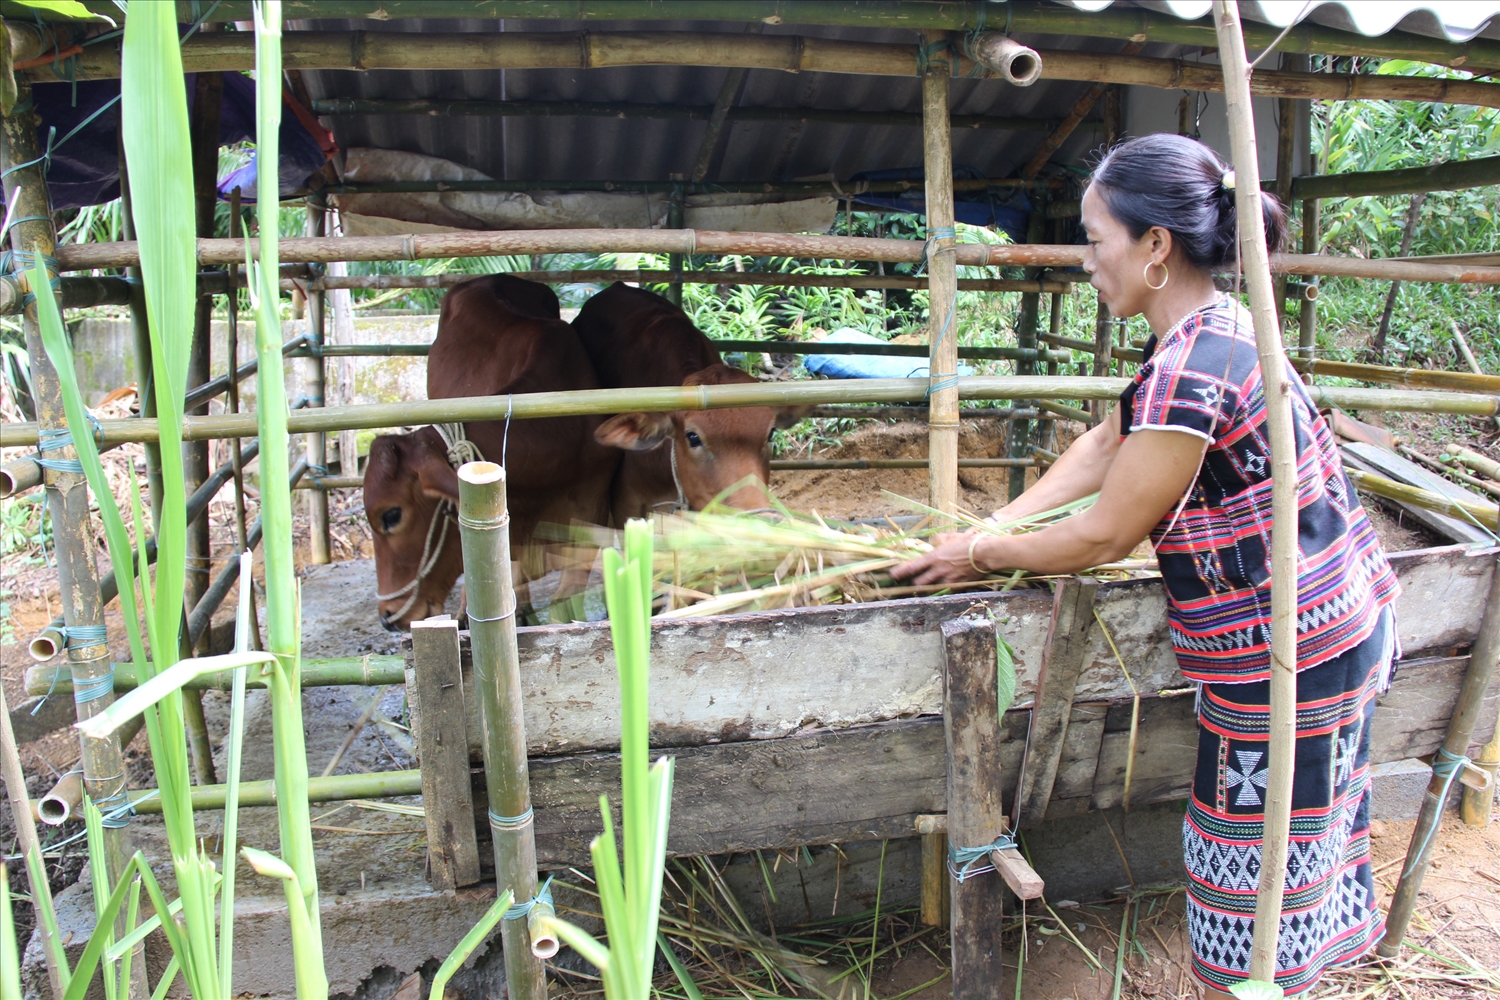  Phụ nữ DTTS vẫn chủ yếu lao động trong lĩnh vực sản xuất nông lâm nghiệp.